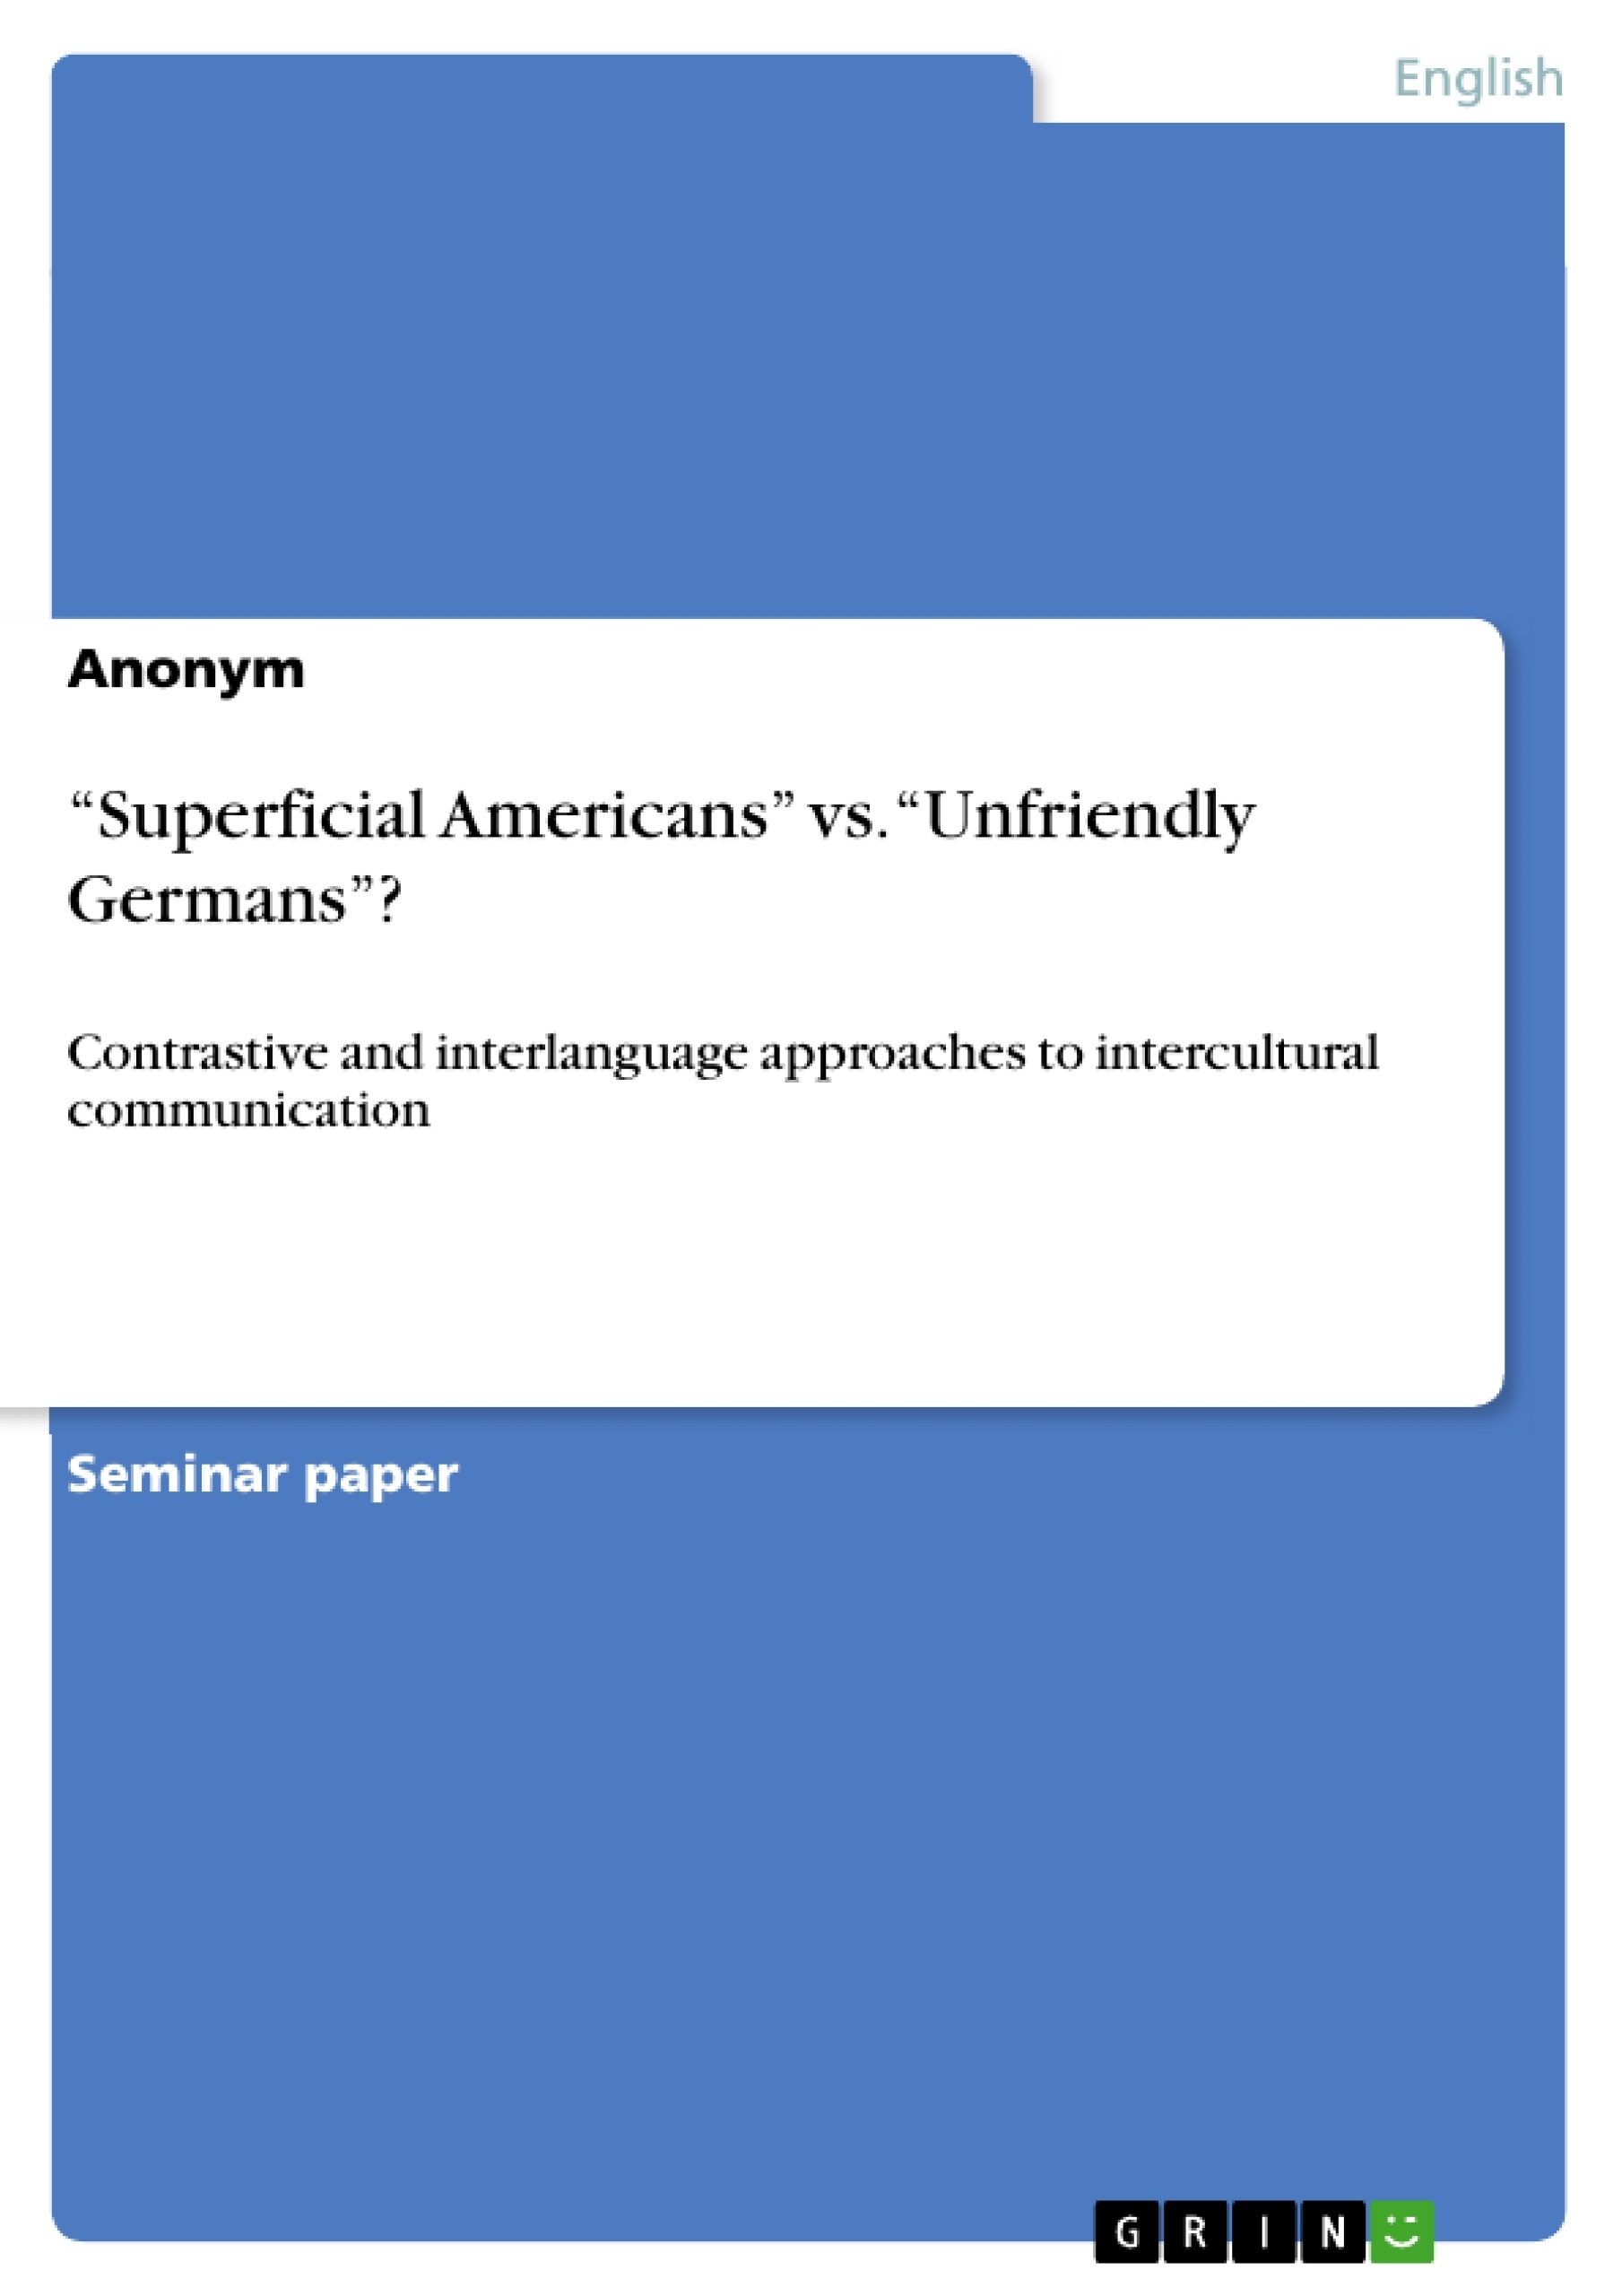 Title: “Superficial Americans” vs. “Unfriendly Germans”?